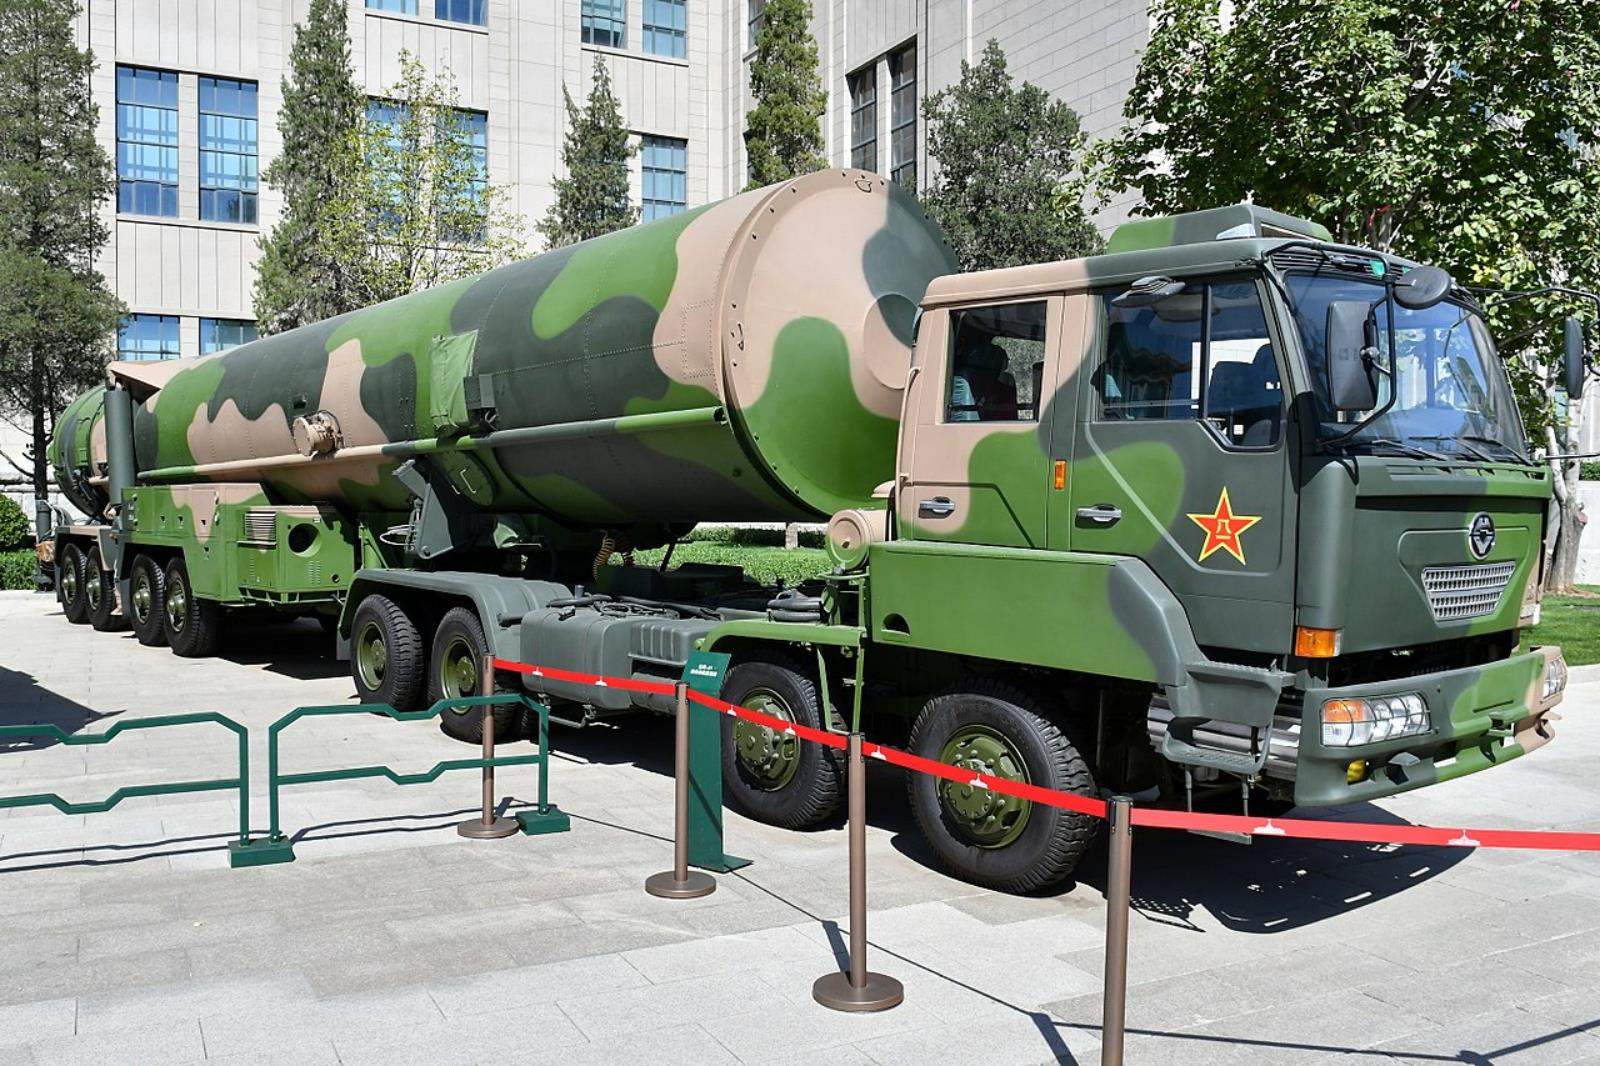 Widok jak na wojnie, Chiny masowo testują swoje pociski balistyczne